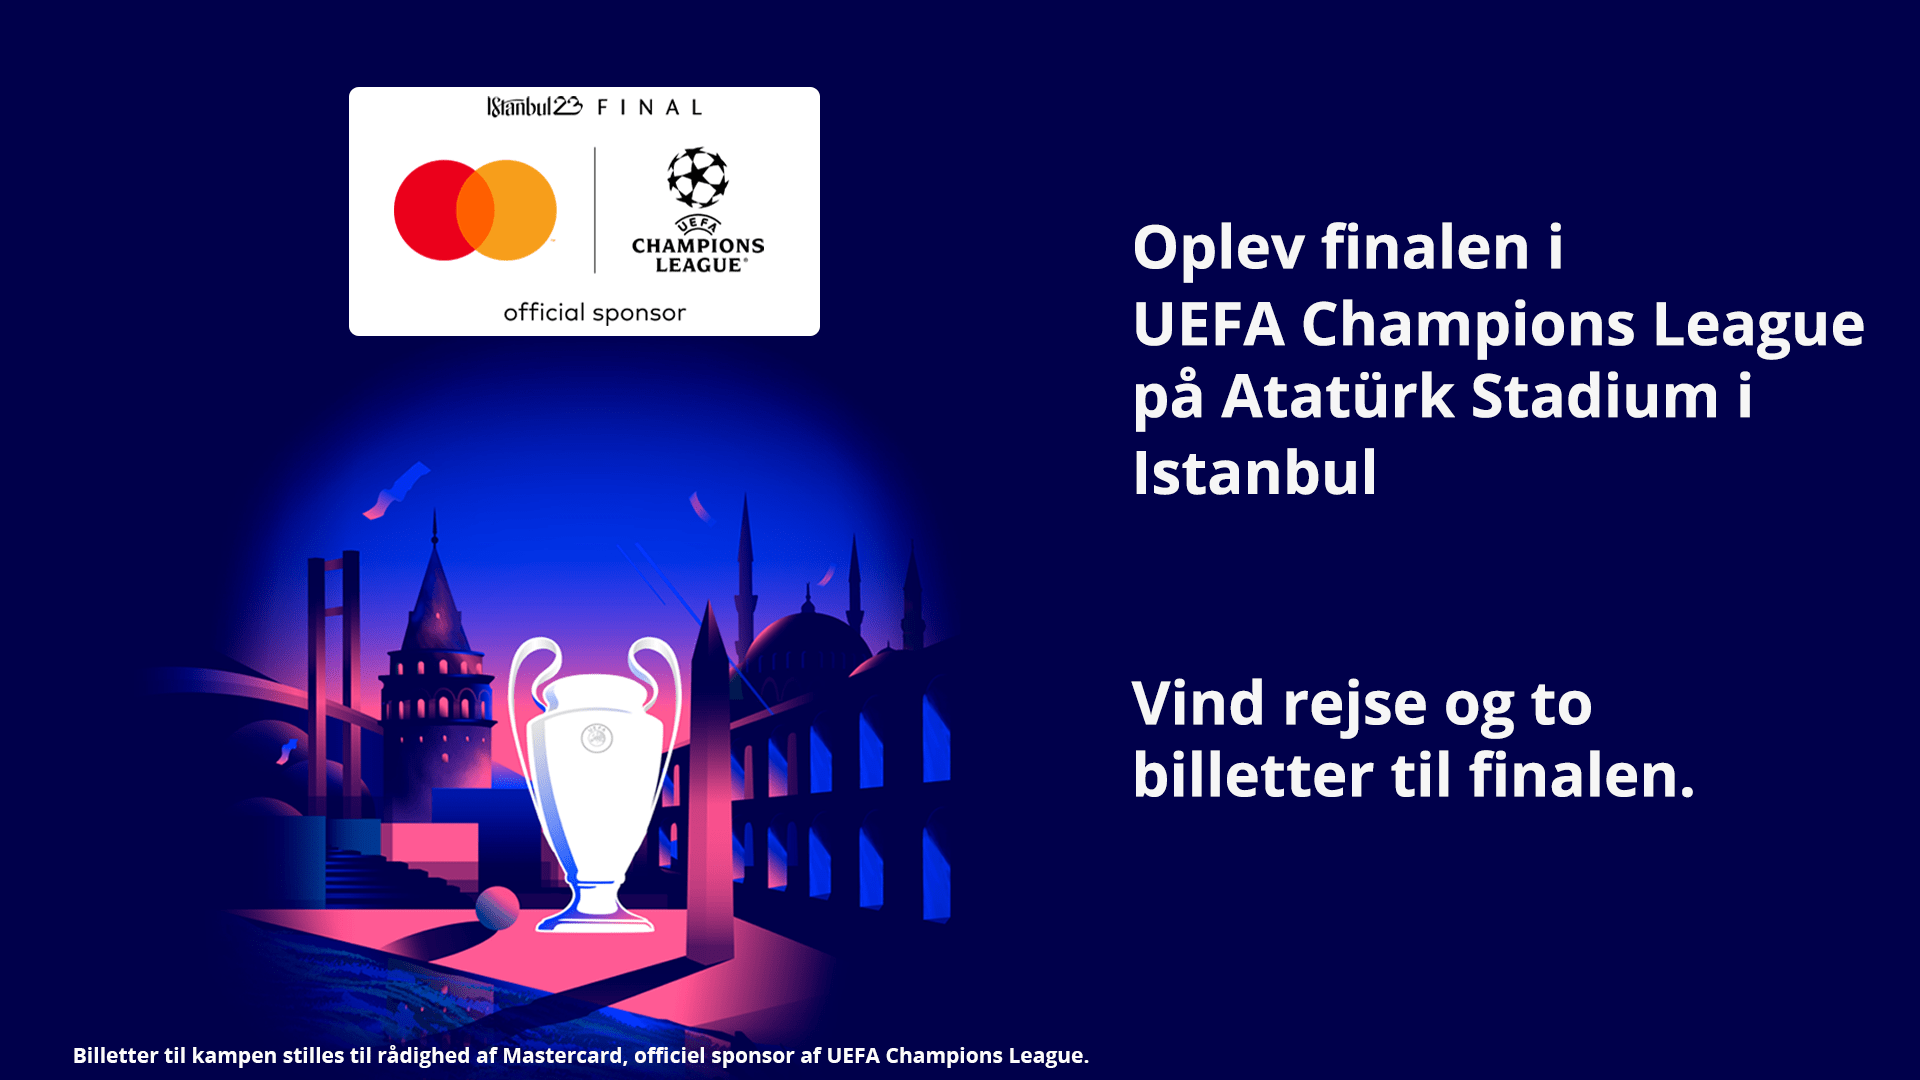 Vind fodboldrejse til Champions League finalen i Istanbul